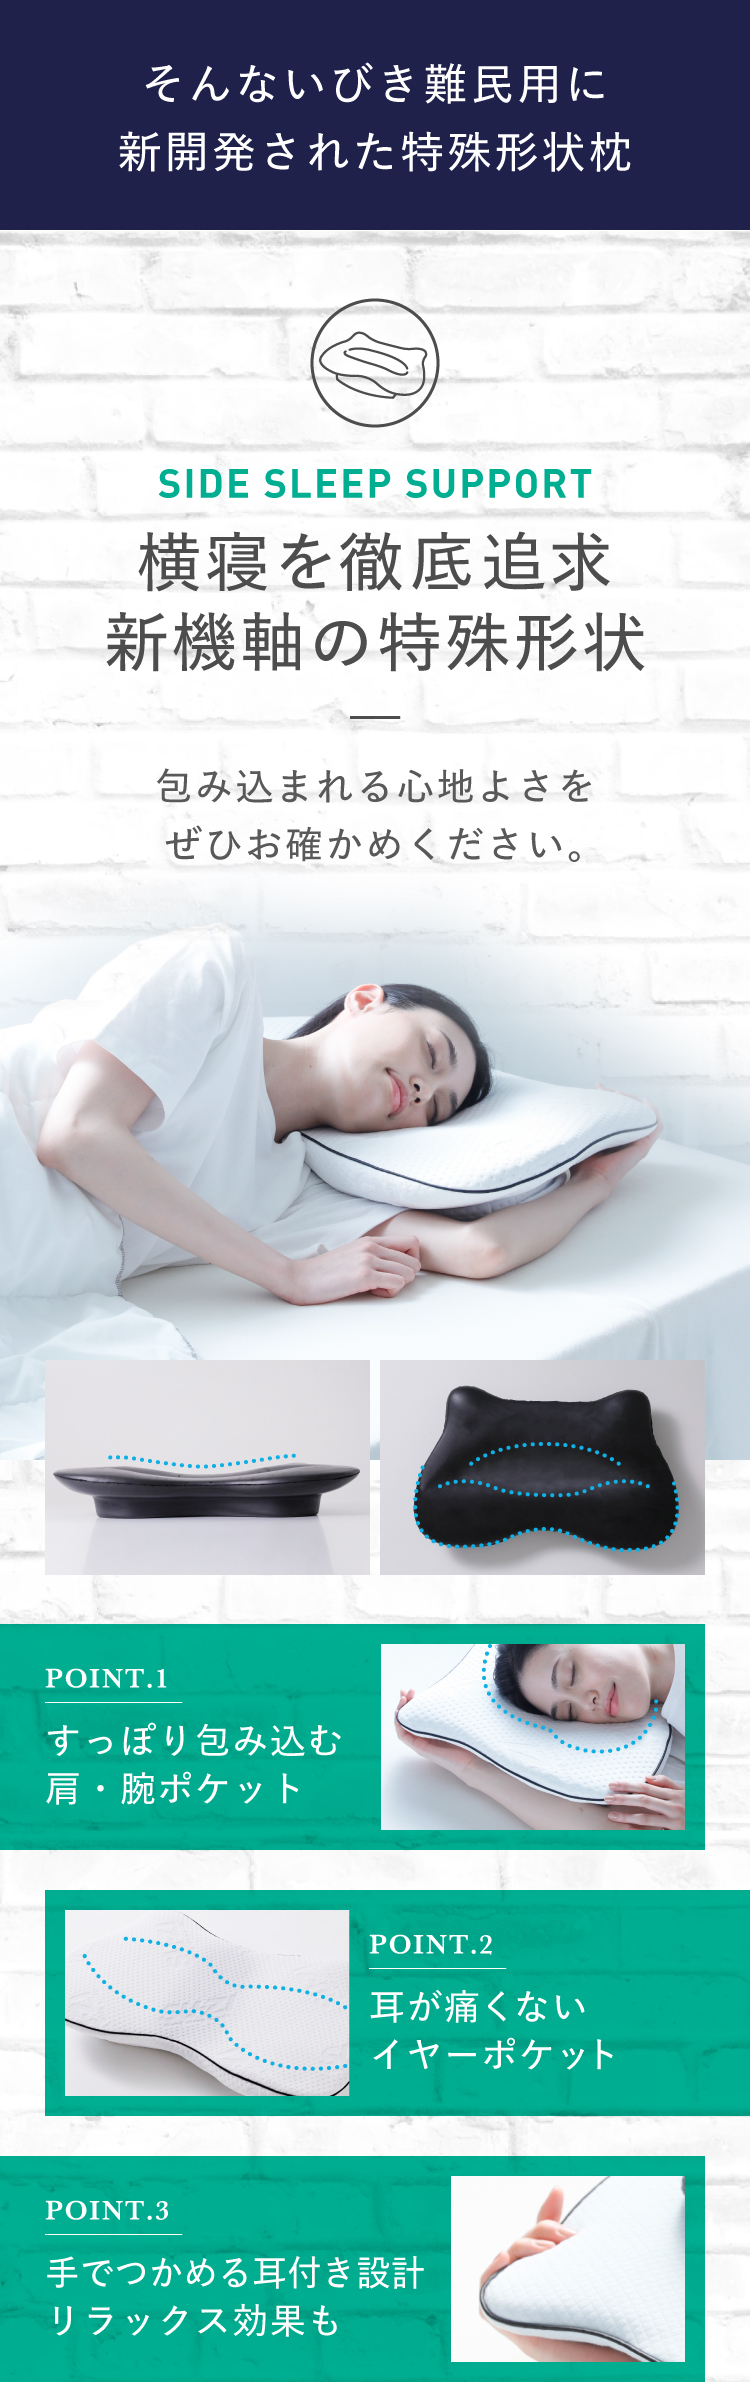 いびき難民用に新開発された特殊形状枕